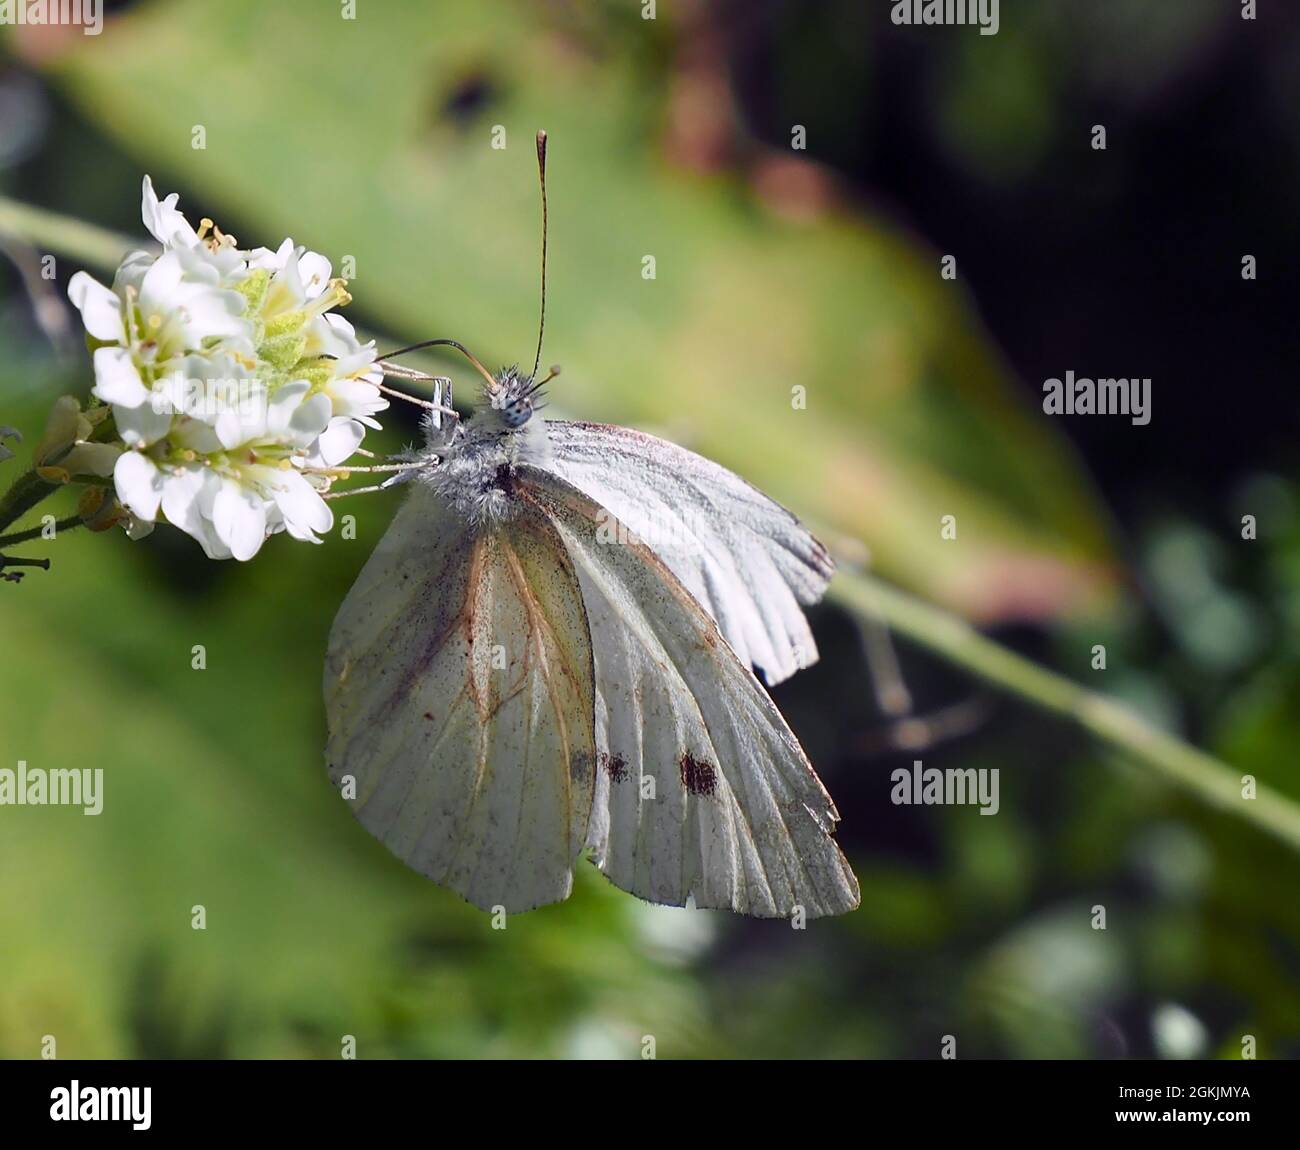 Primer plano de una mariposa blanca de col que recoge el néctar de la flor blanca en una planta de alyssum de azares con un fondo borroso. Foto de stock